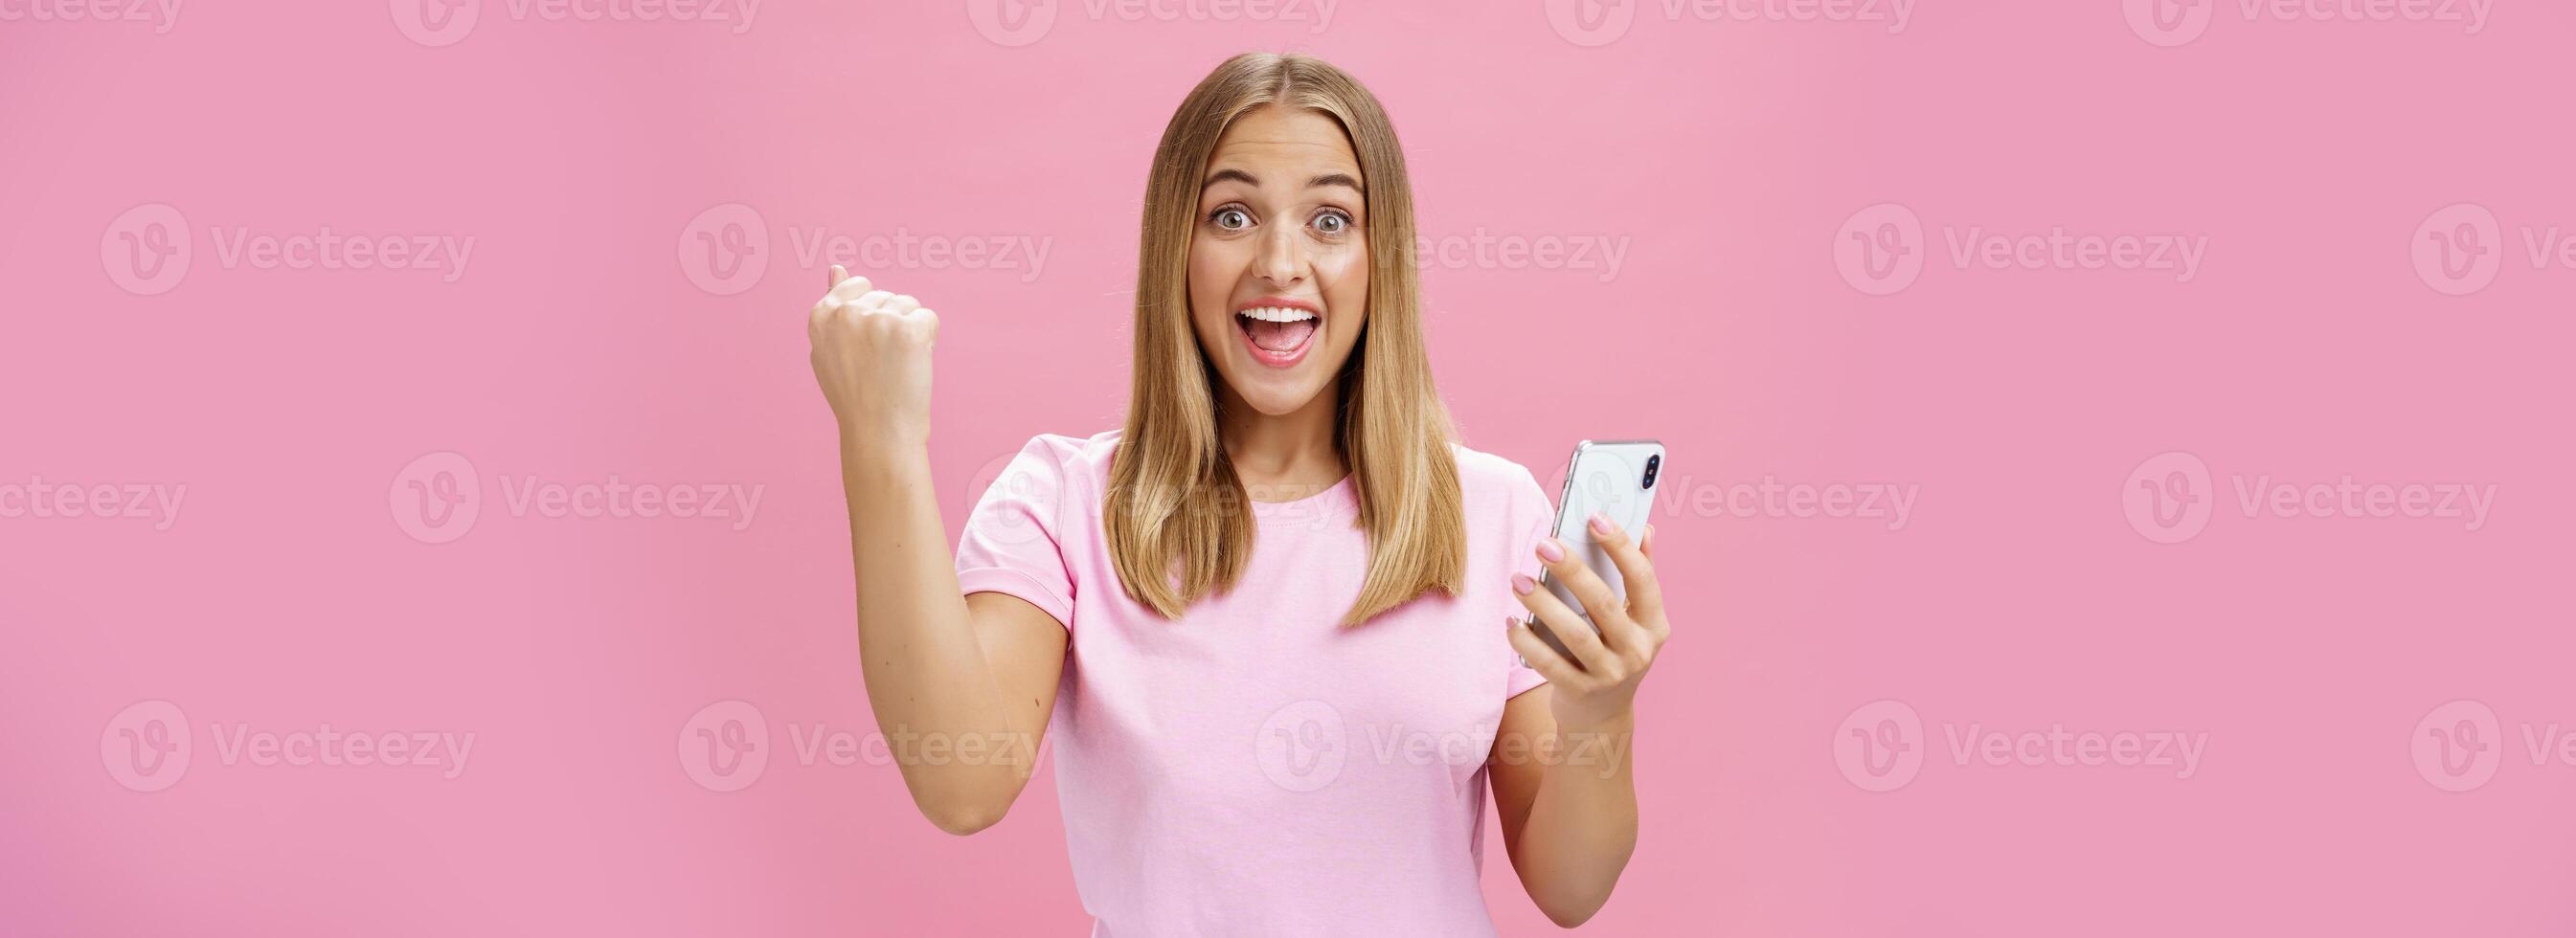 flicka slå egen spela in i smartphone spel höjning knöt näve i heja på och triumf innehav mobiltelefon, leende upphetsad och Lycklig på kamera fira seger med glad gest över rosa bakgrund foto